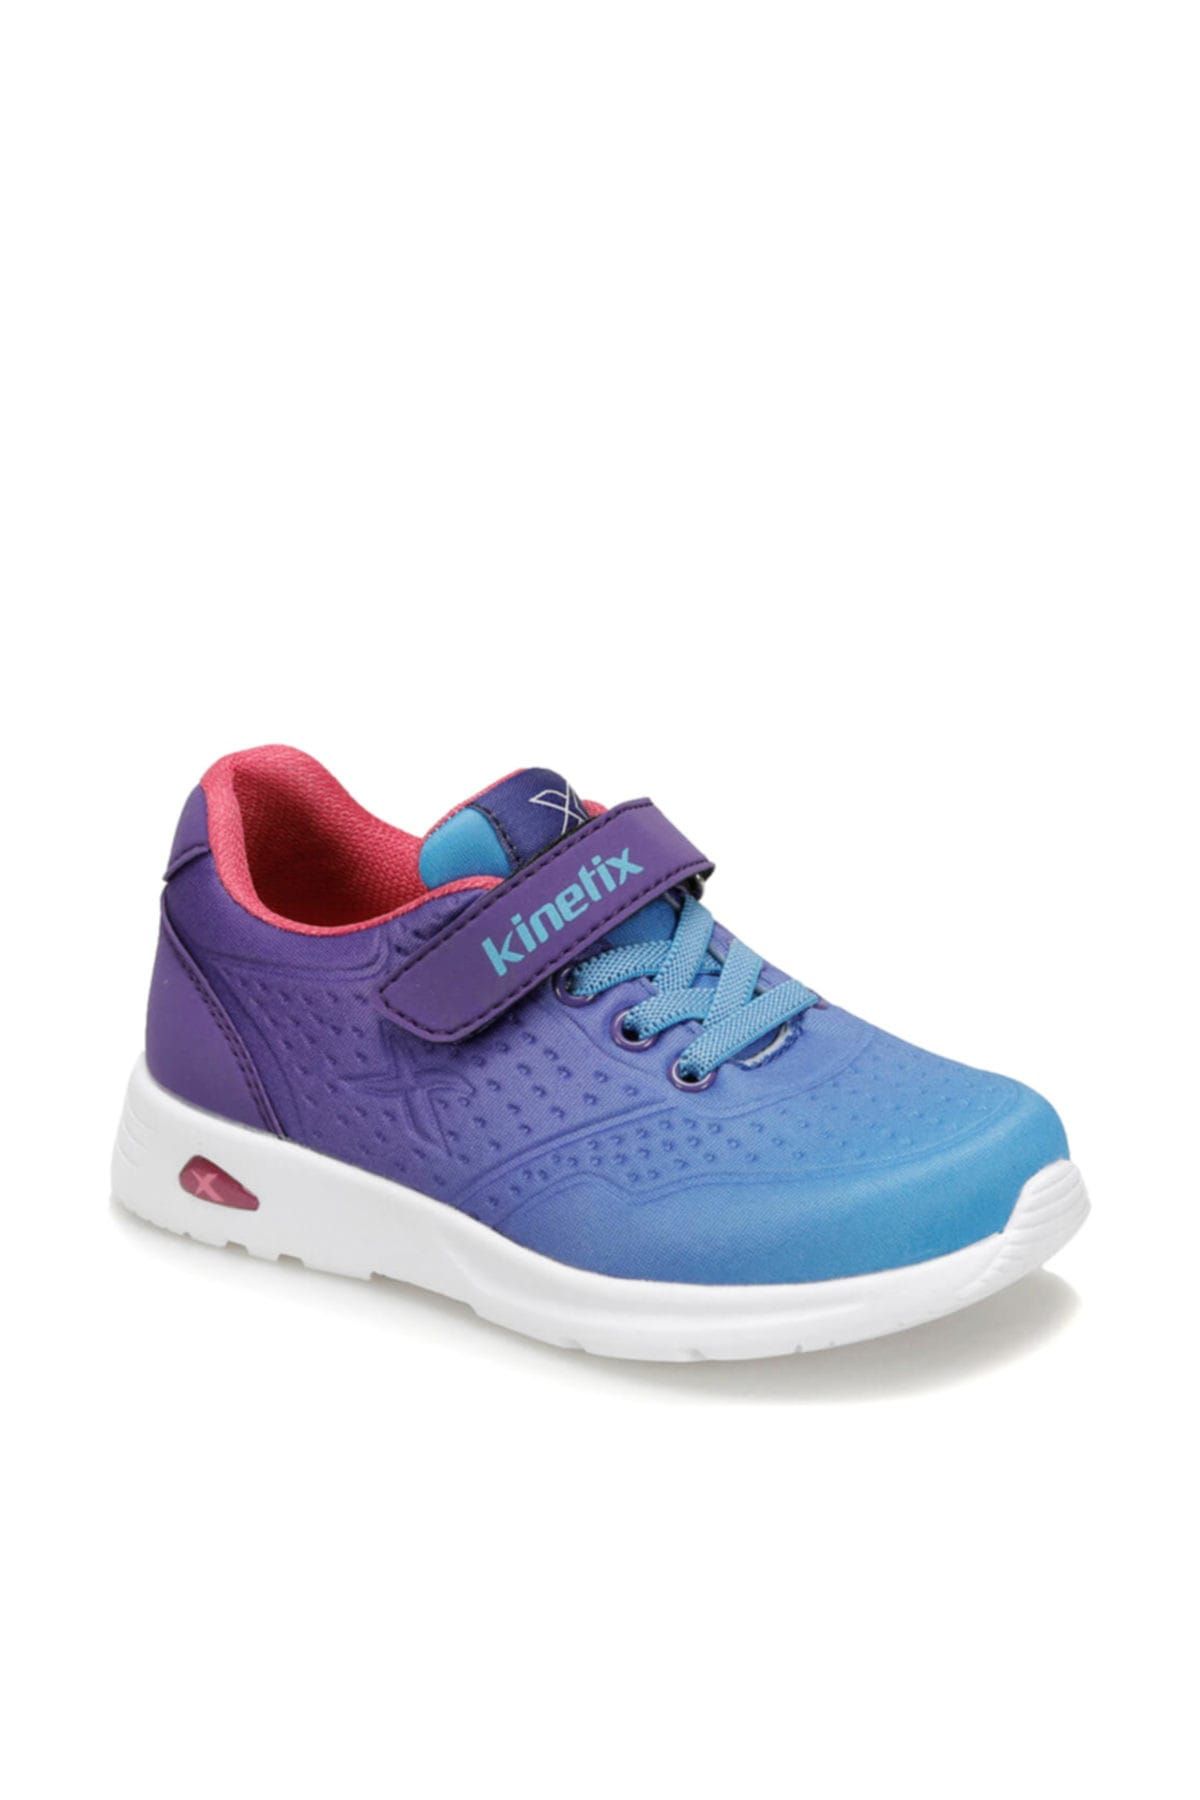 Kinetix Buruma Mor Mavi Kız Çocuk Sneaker Ayakkabı 100381542